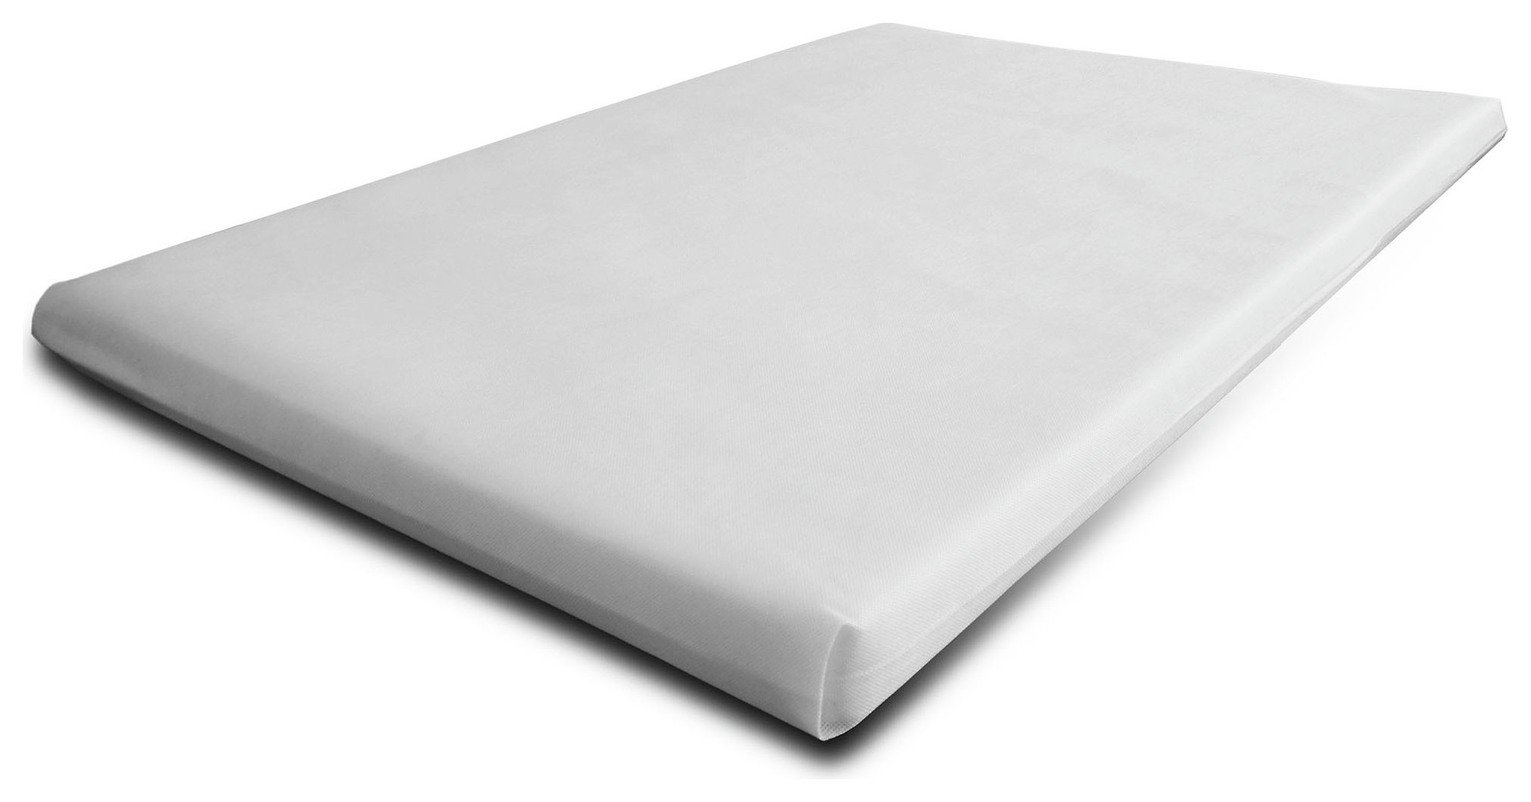 snoo replacement mattress